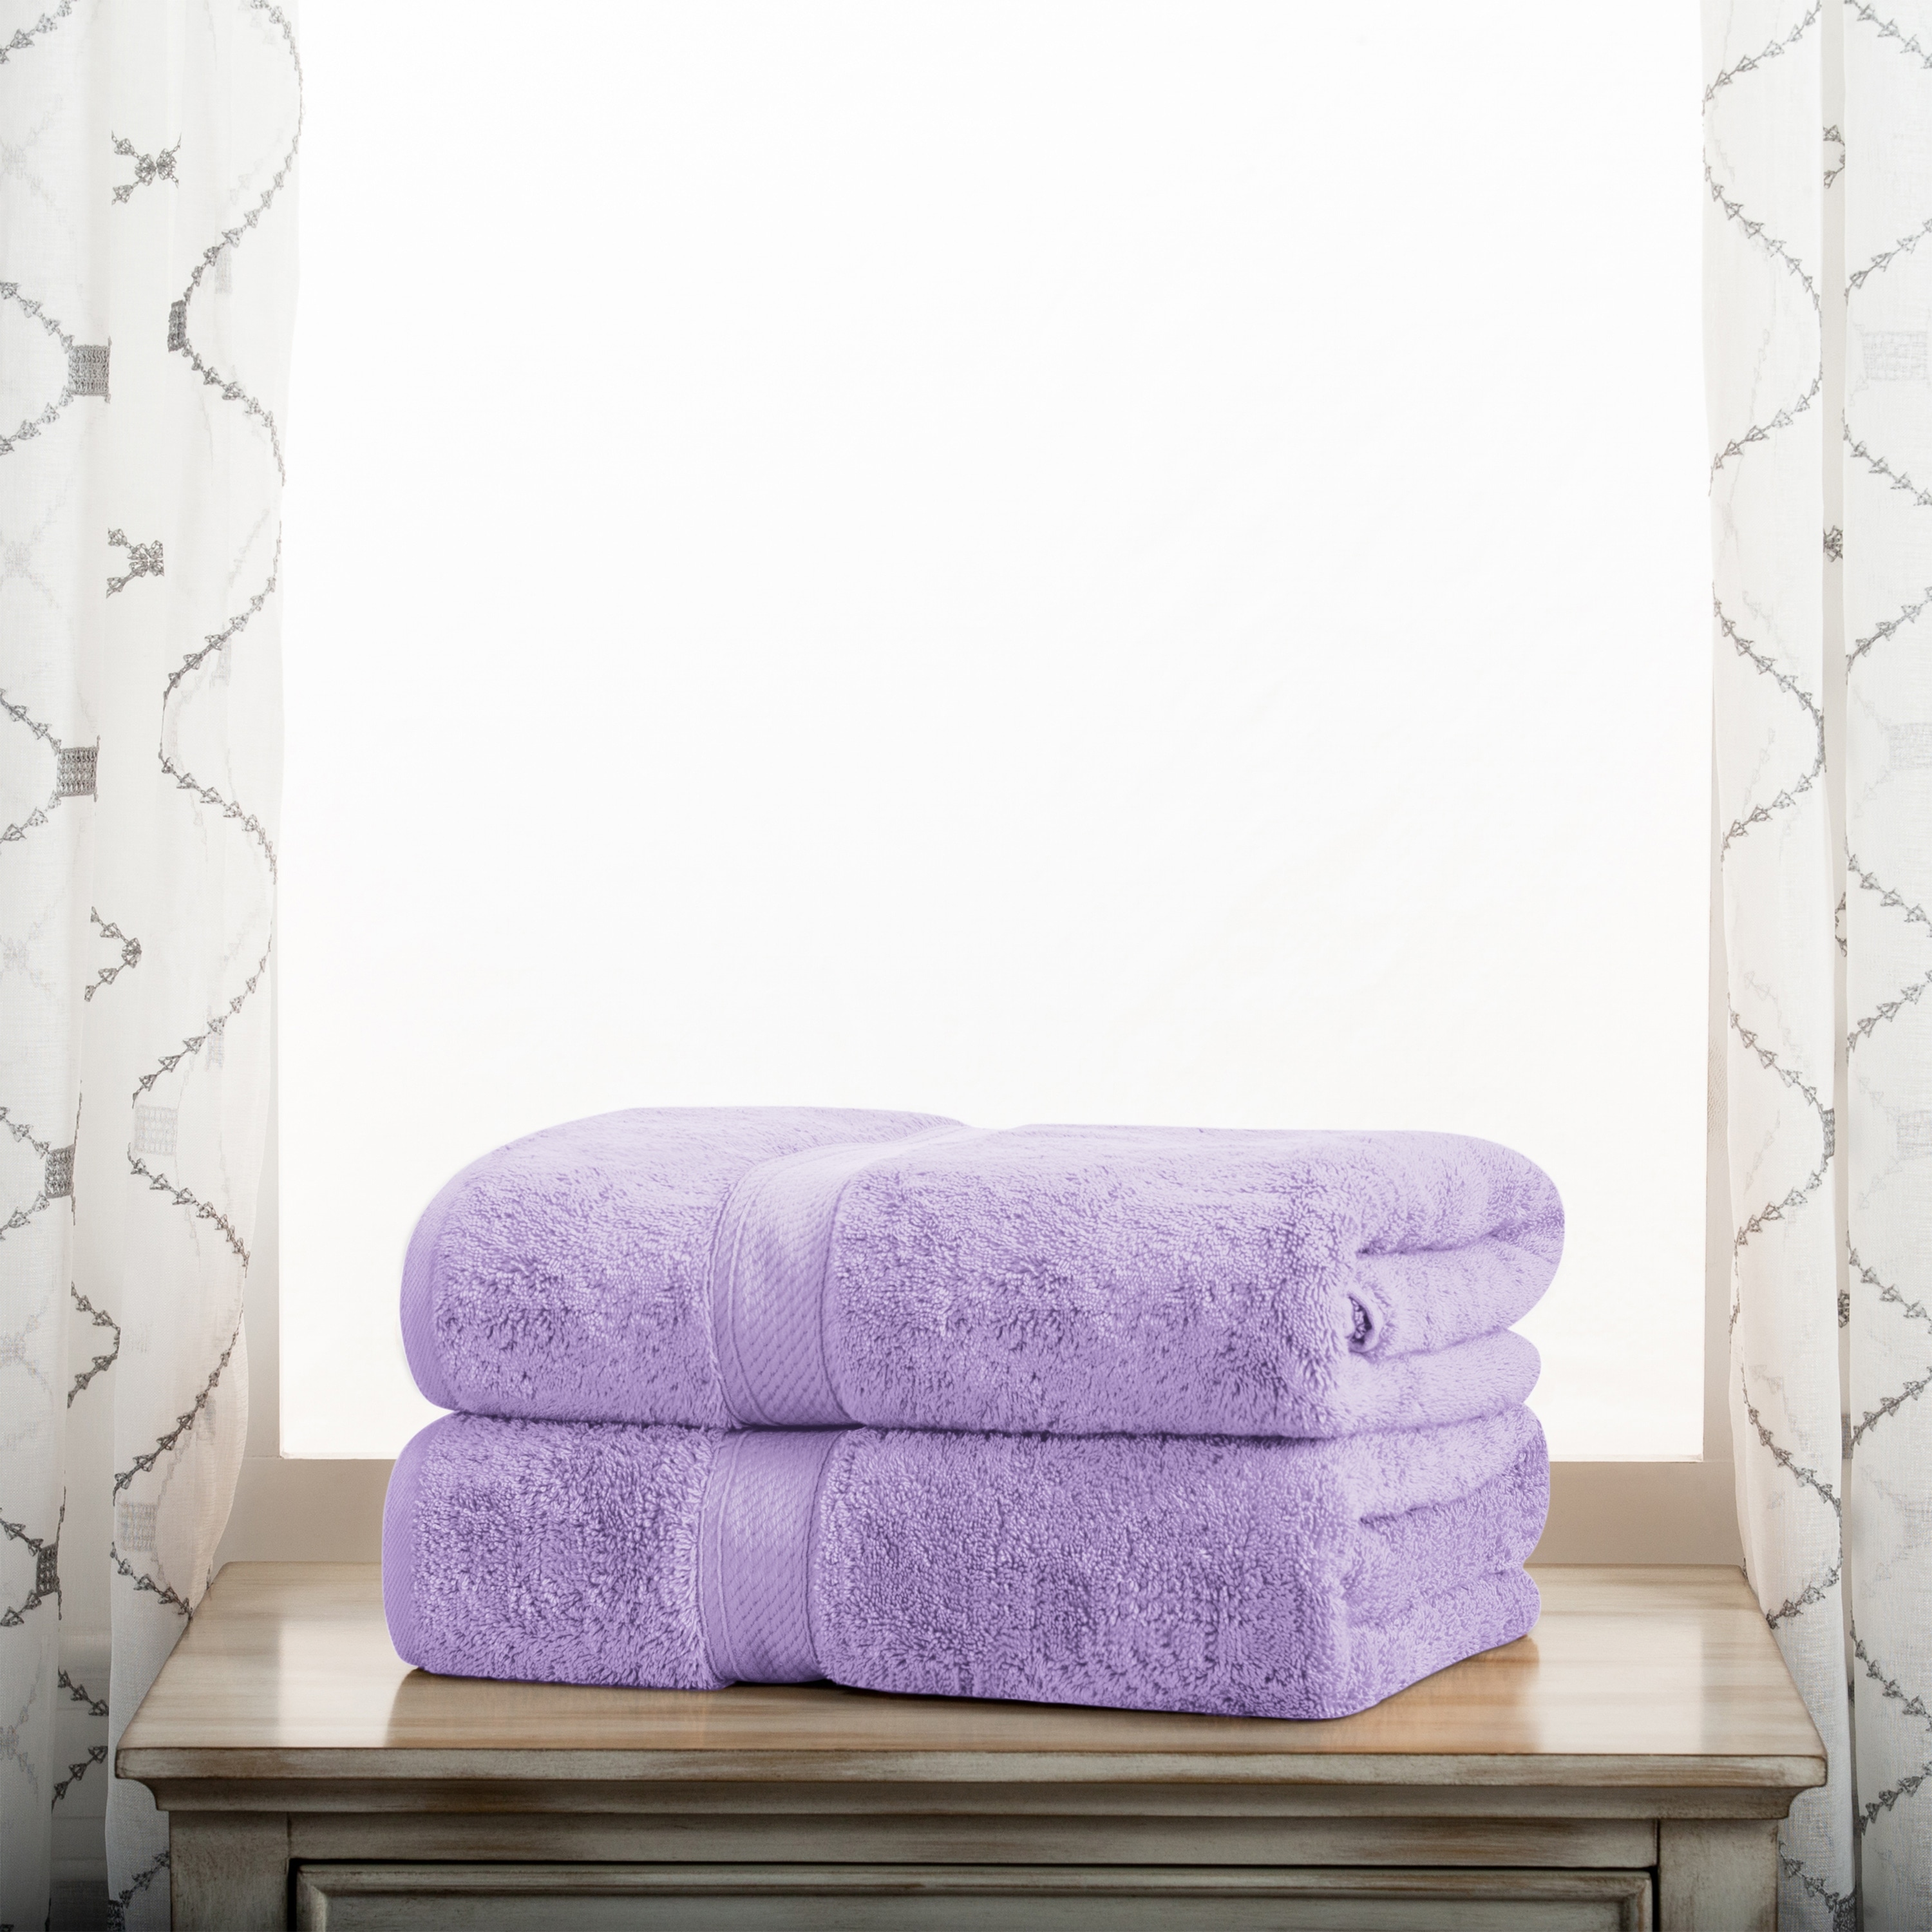 8pc Cotton Bath Towel Set Light Purple